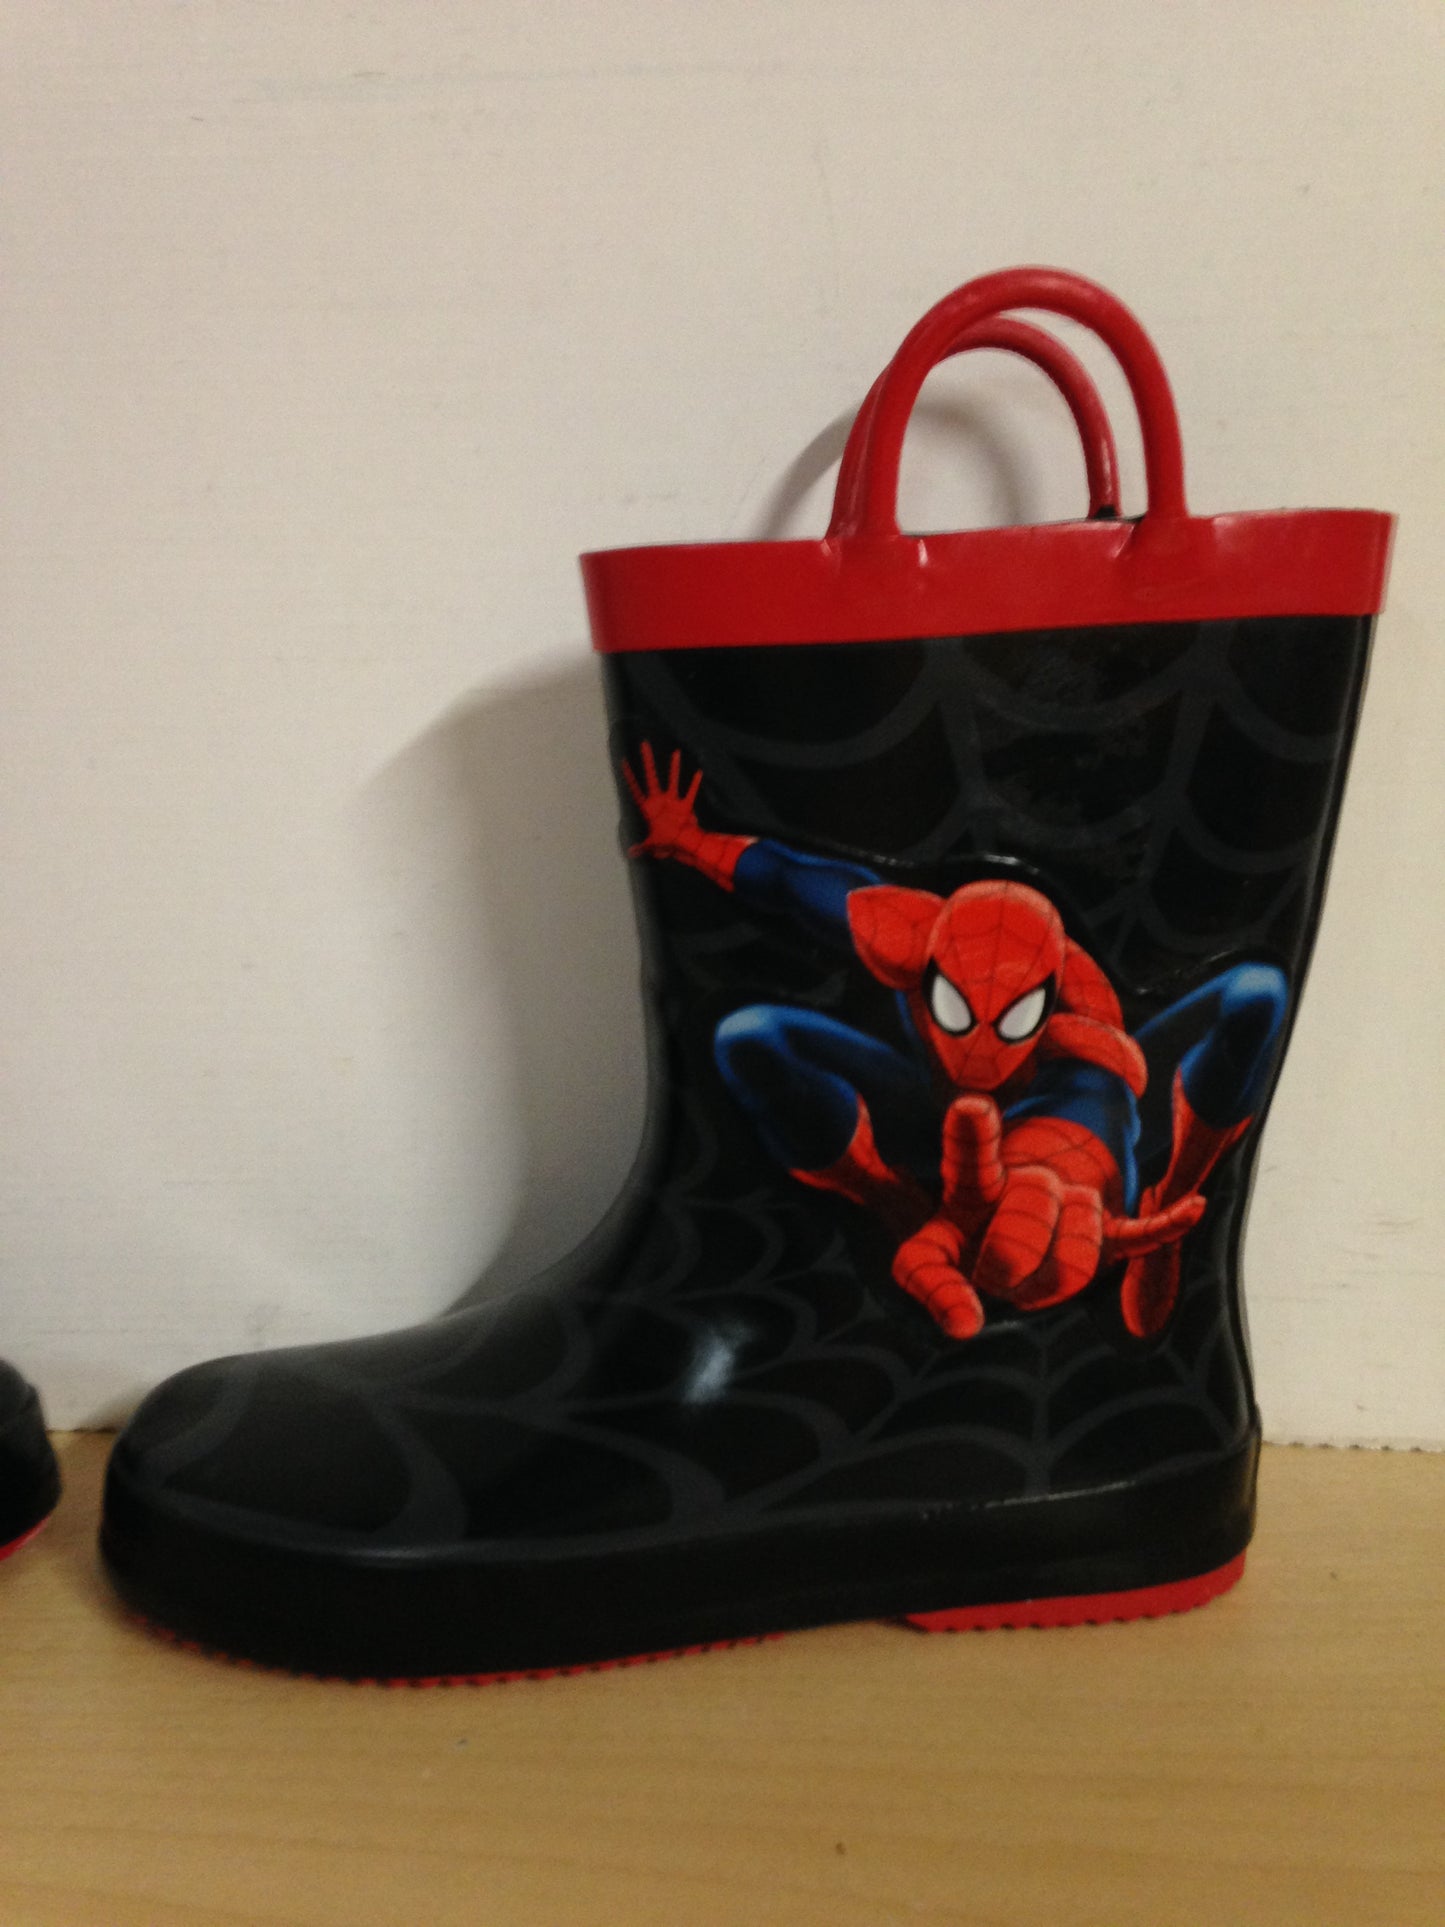 Rain Boots Child Size 2 Spider Man Black Red